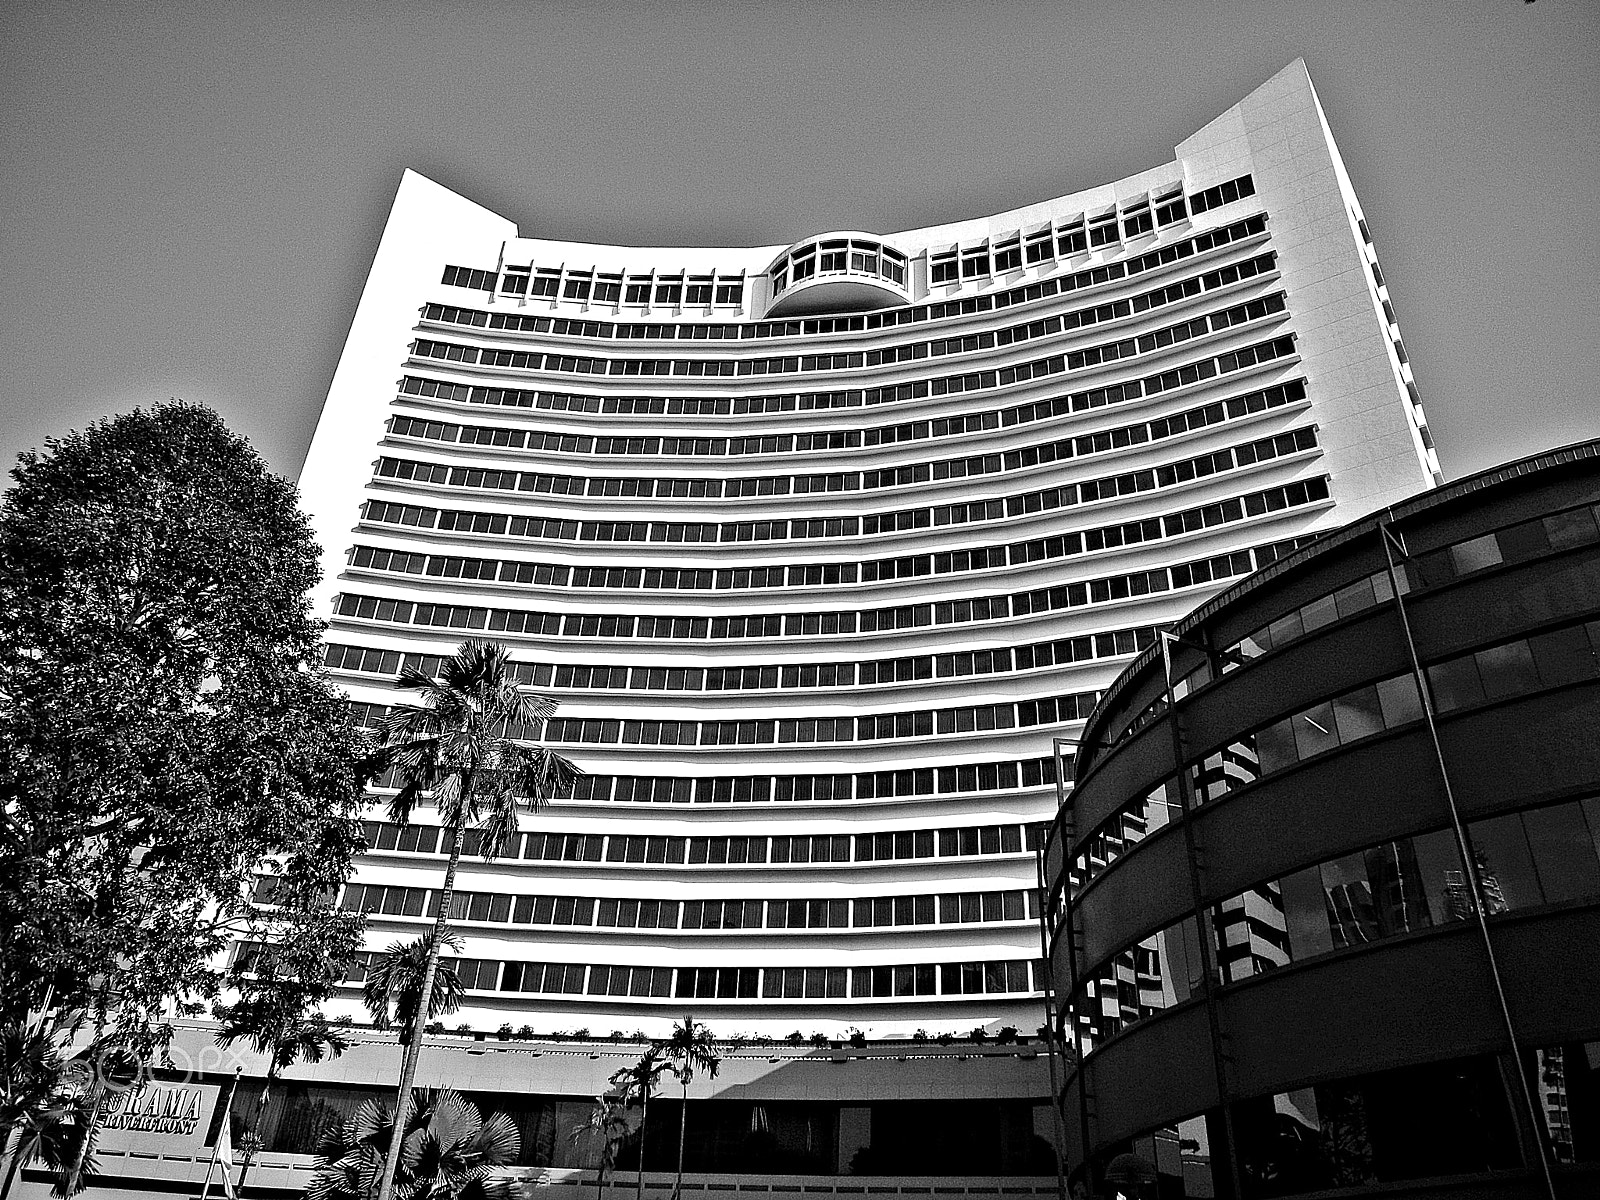 Nikon Coolpix S1200pj sample photo. Hotel apollo, singapore photography